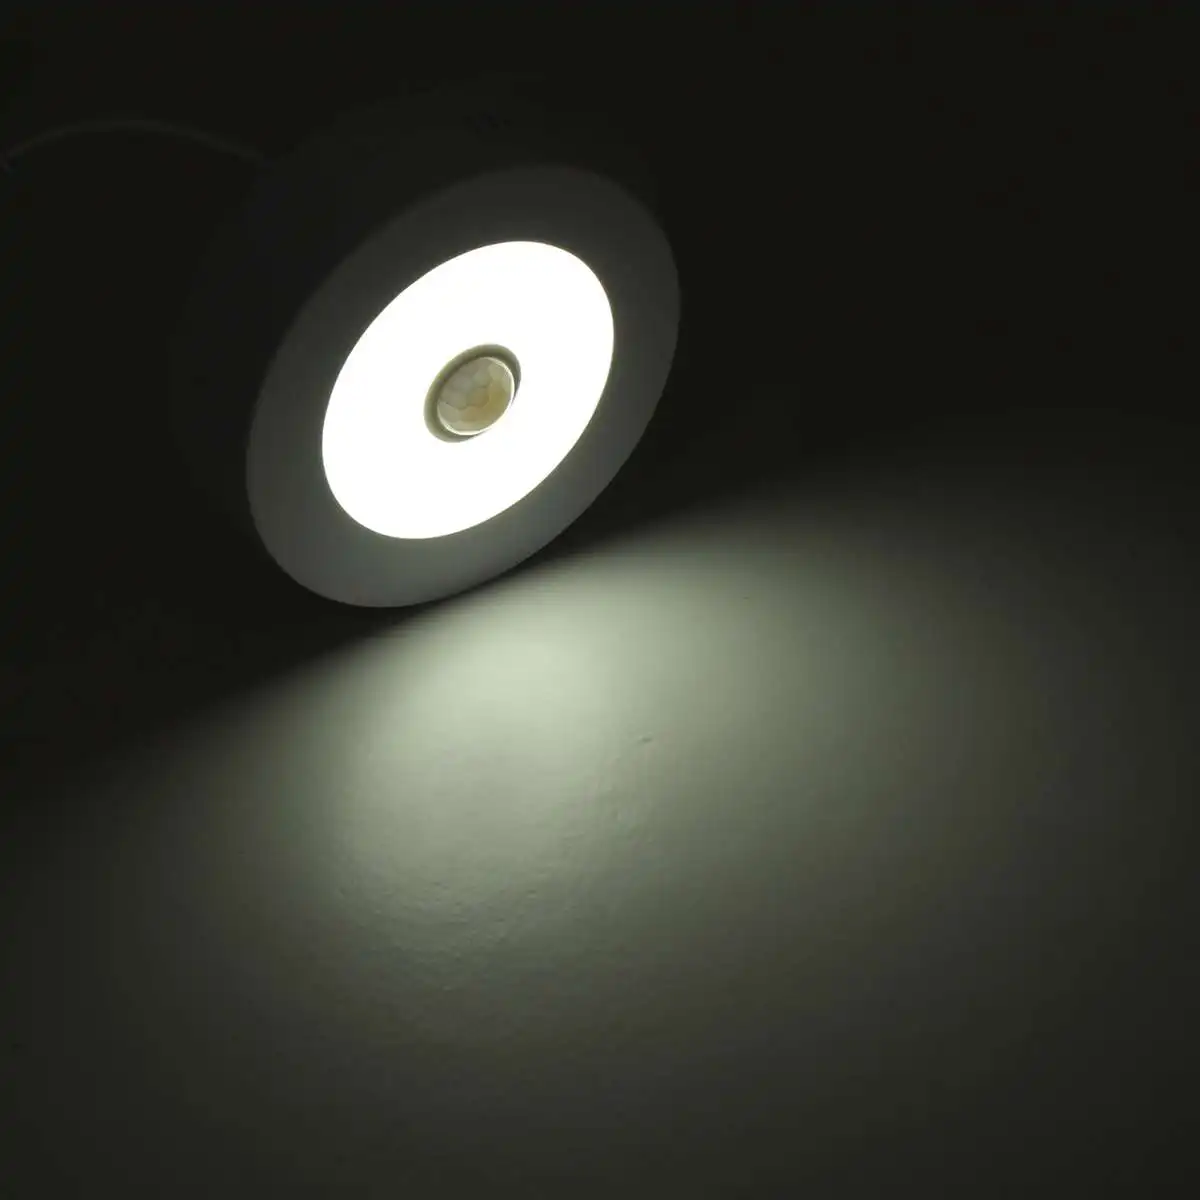 6 Вт потолочный светильник 2835smd светильник+ светодиодный индукционный датчик тела потолочный светильник для кухни/фойе/балкона/коридора/ванной AC85-265V